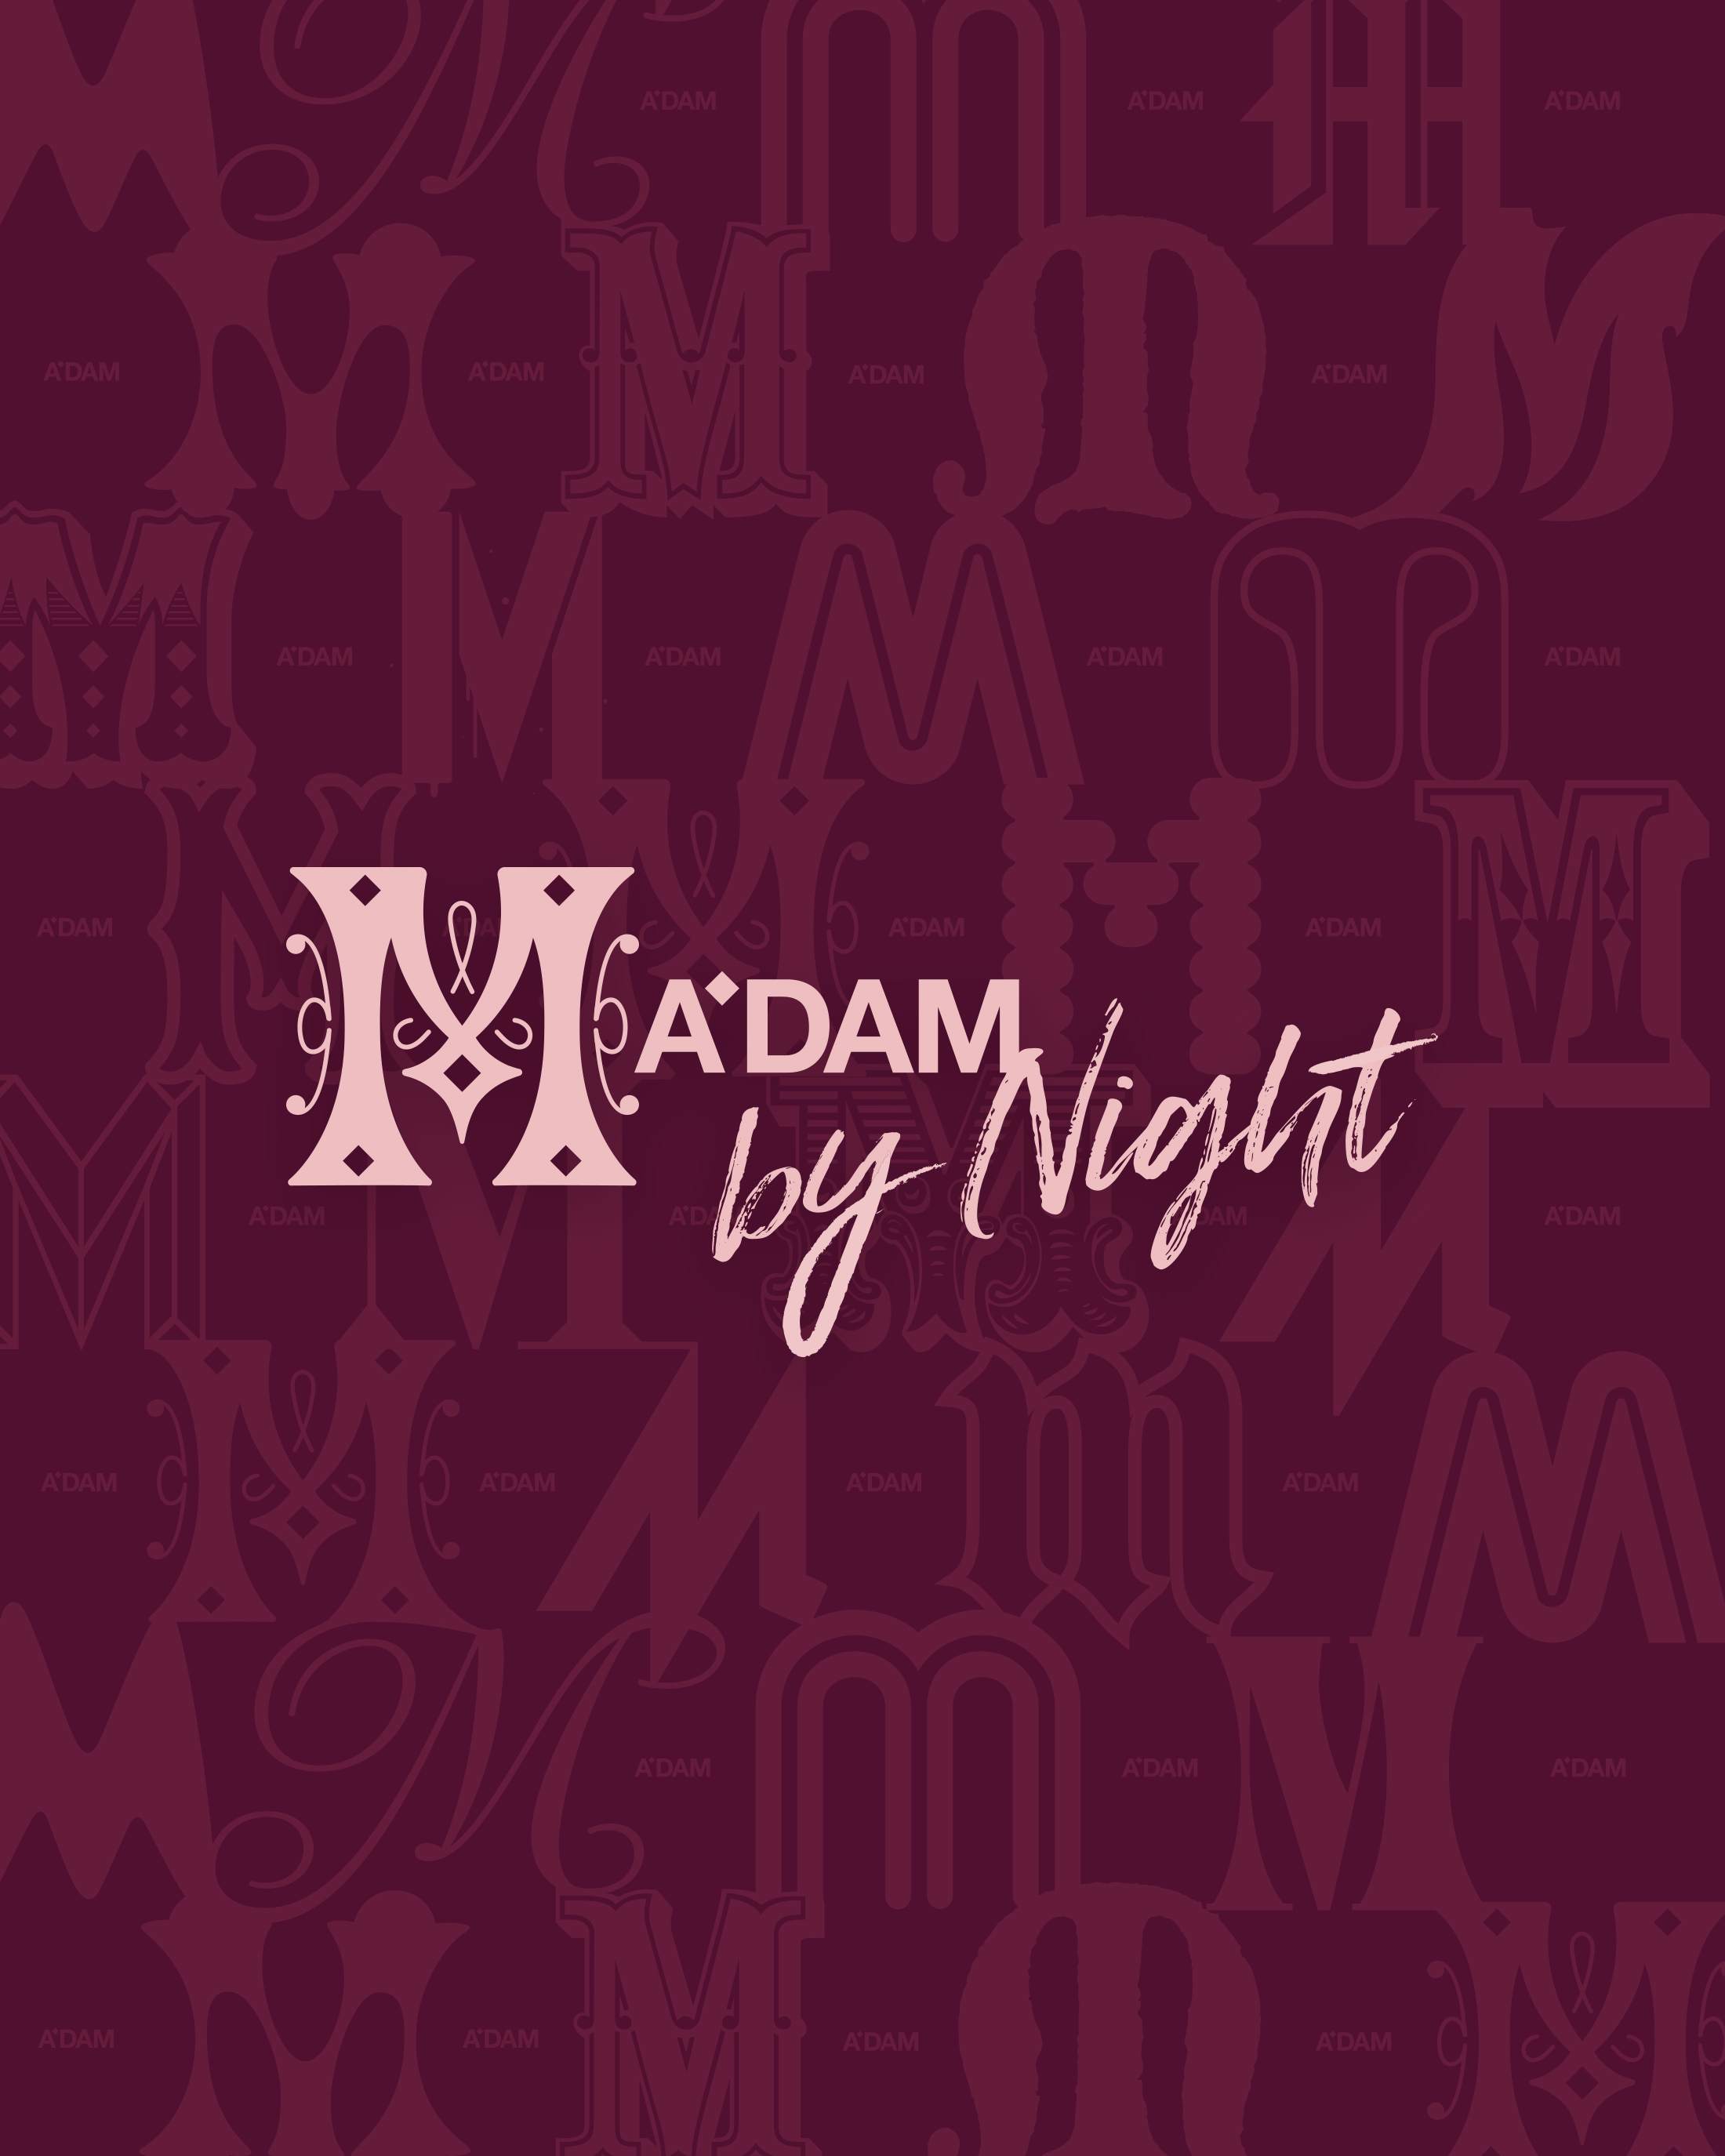 Madam by Night invites: RED 87, Raiz - Página frontal